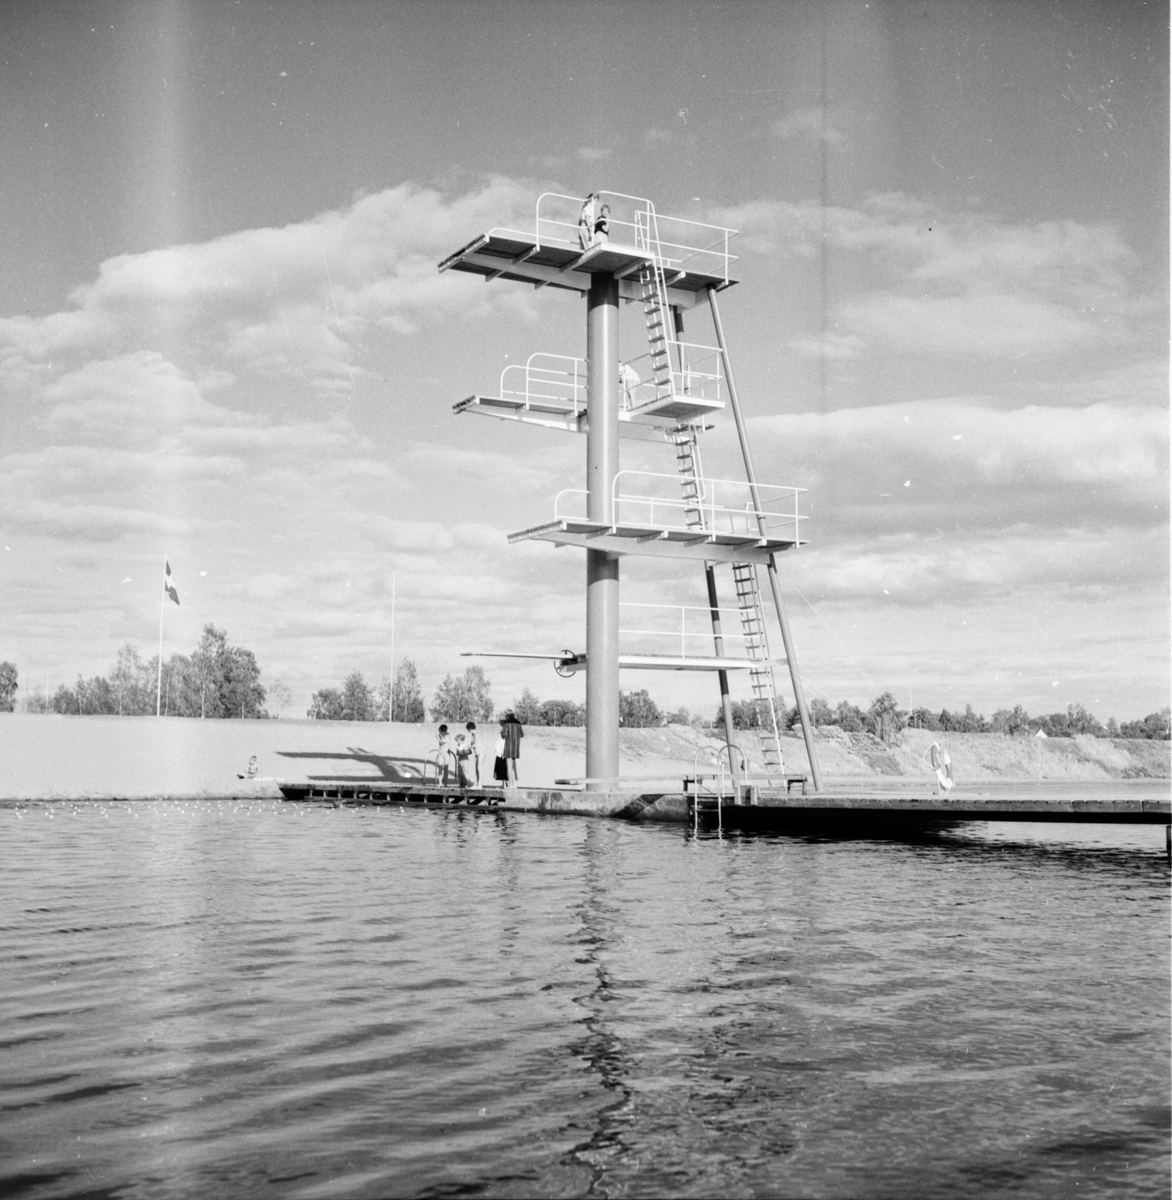 Badet vid Renbron i Bollnäs.
10/7 1958
